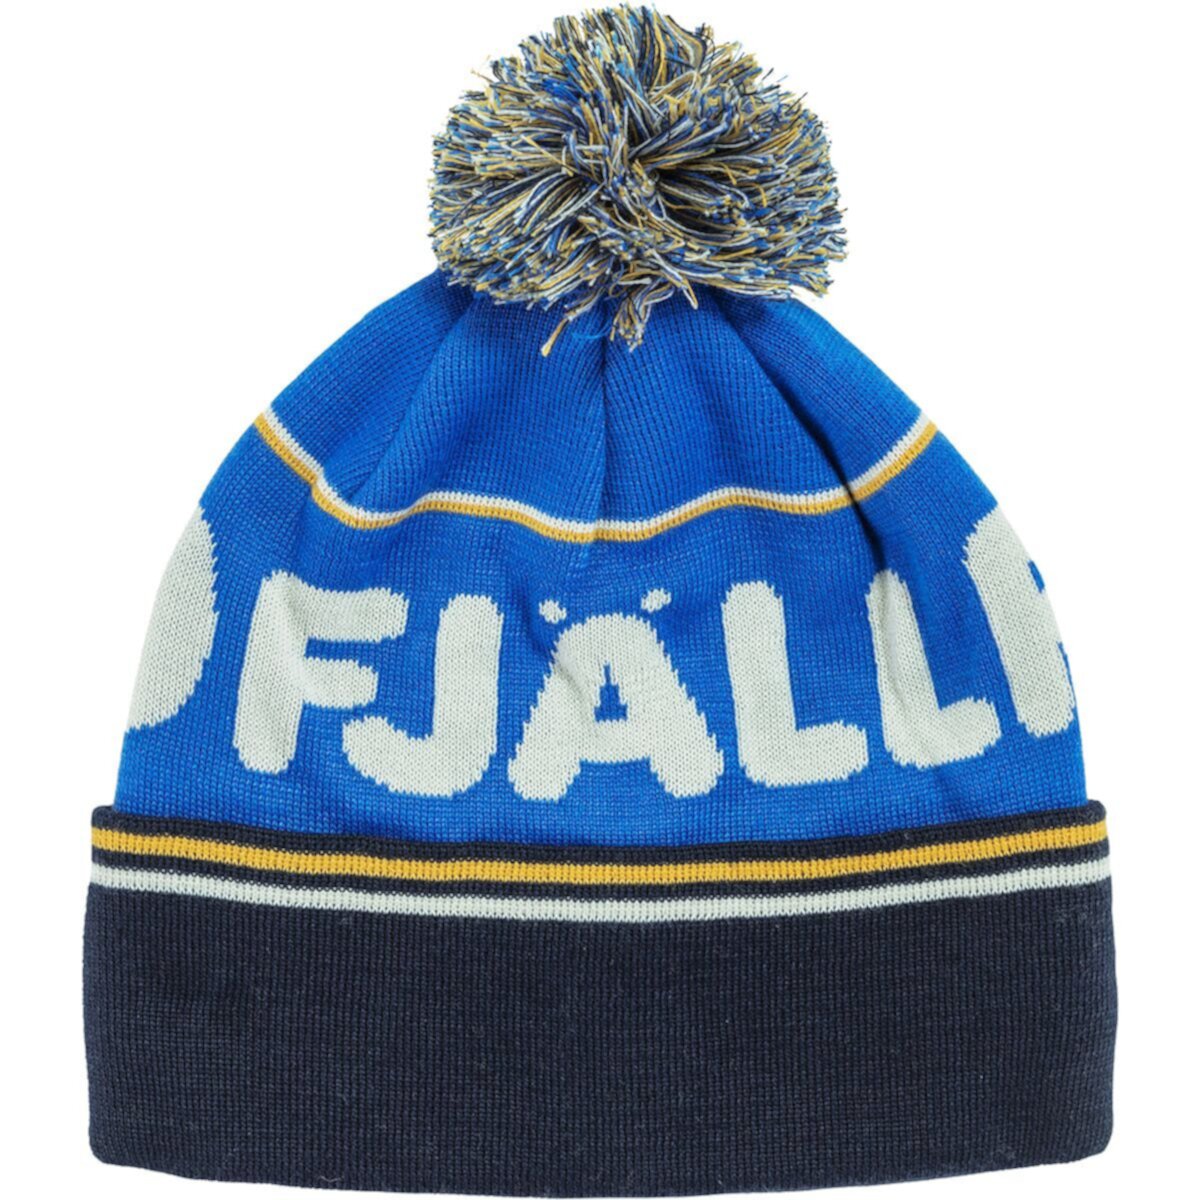 Шляпа с помпонами Fjällräven